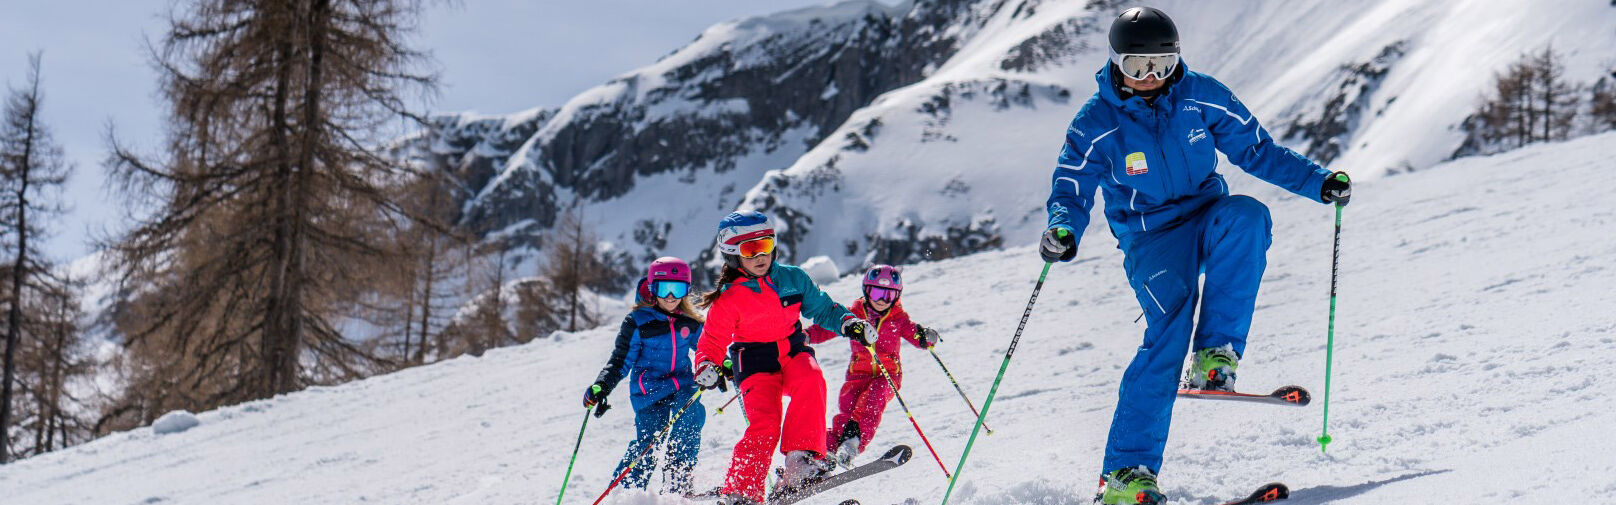 Leer skiën in Flachau - kinderskicursussen van 3 tot 15 jaar